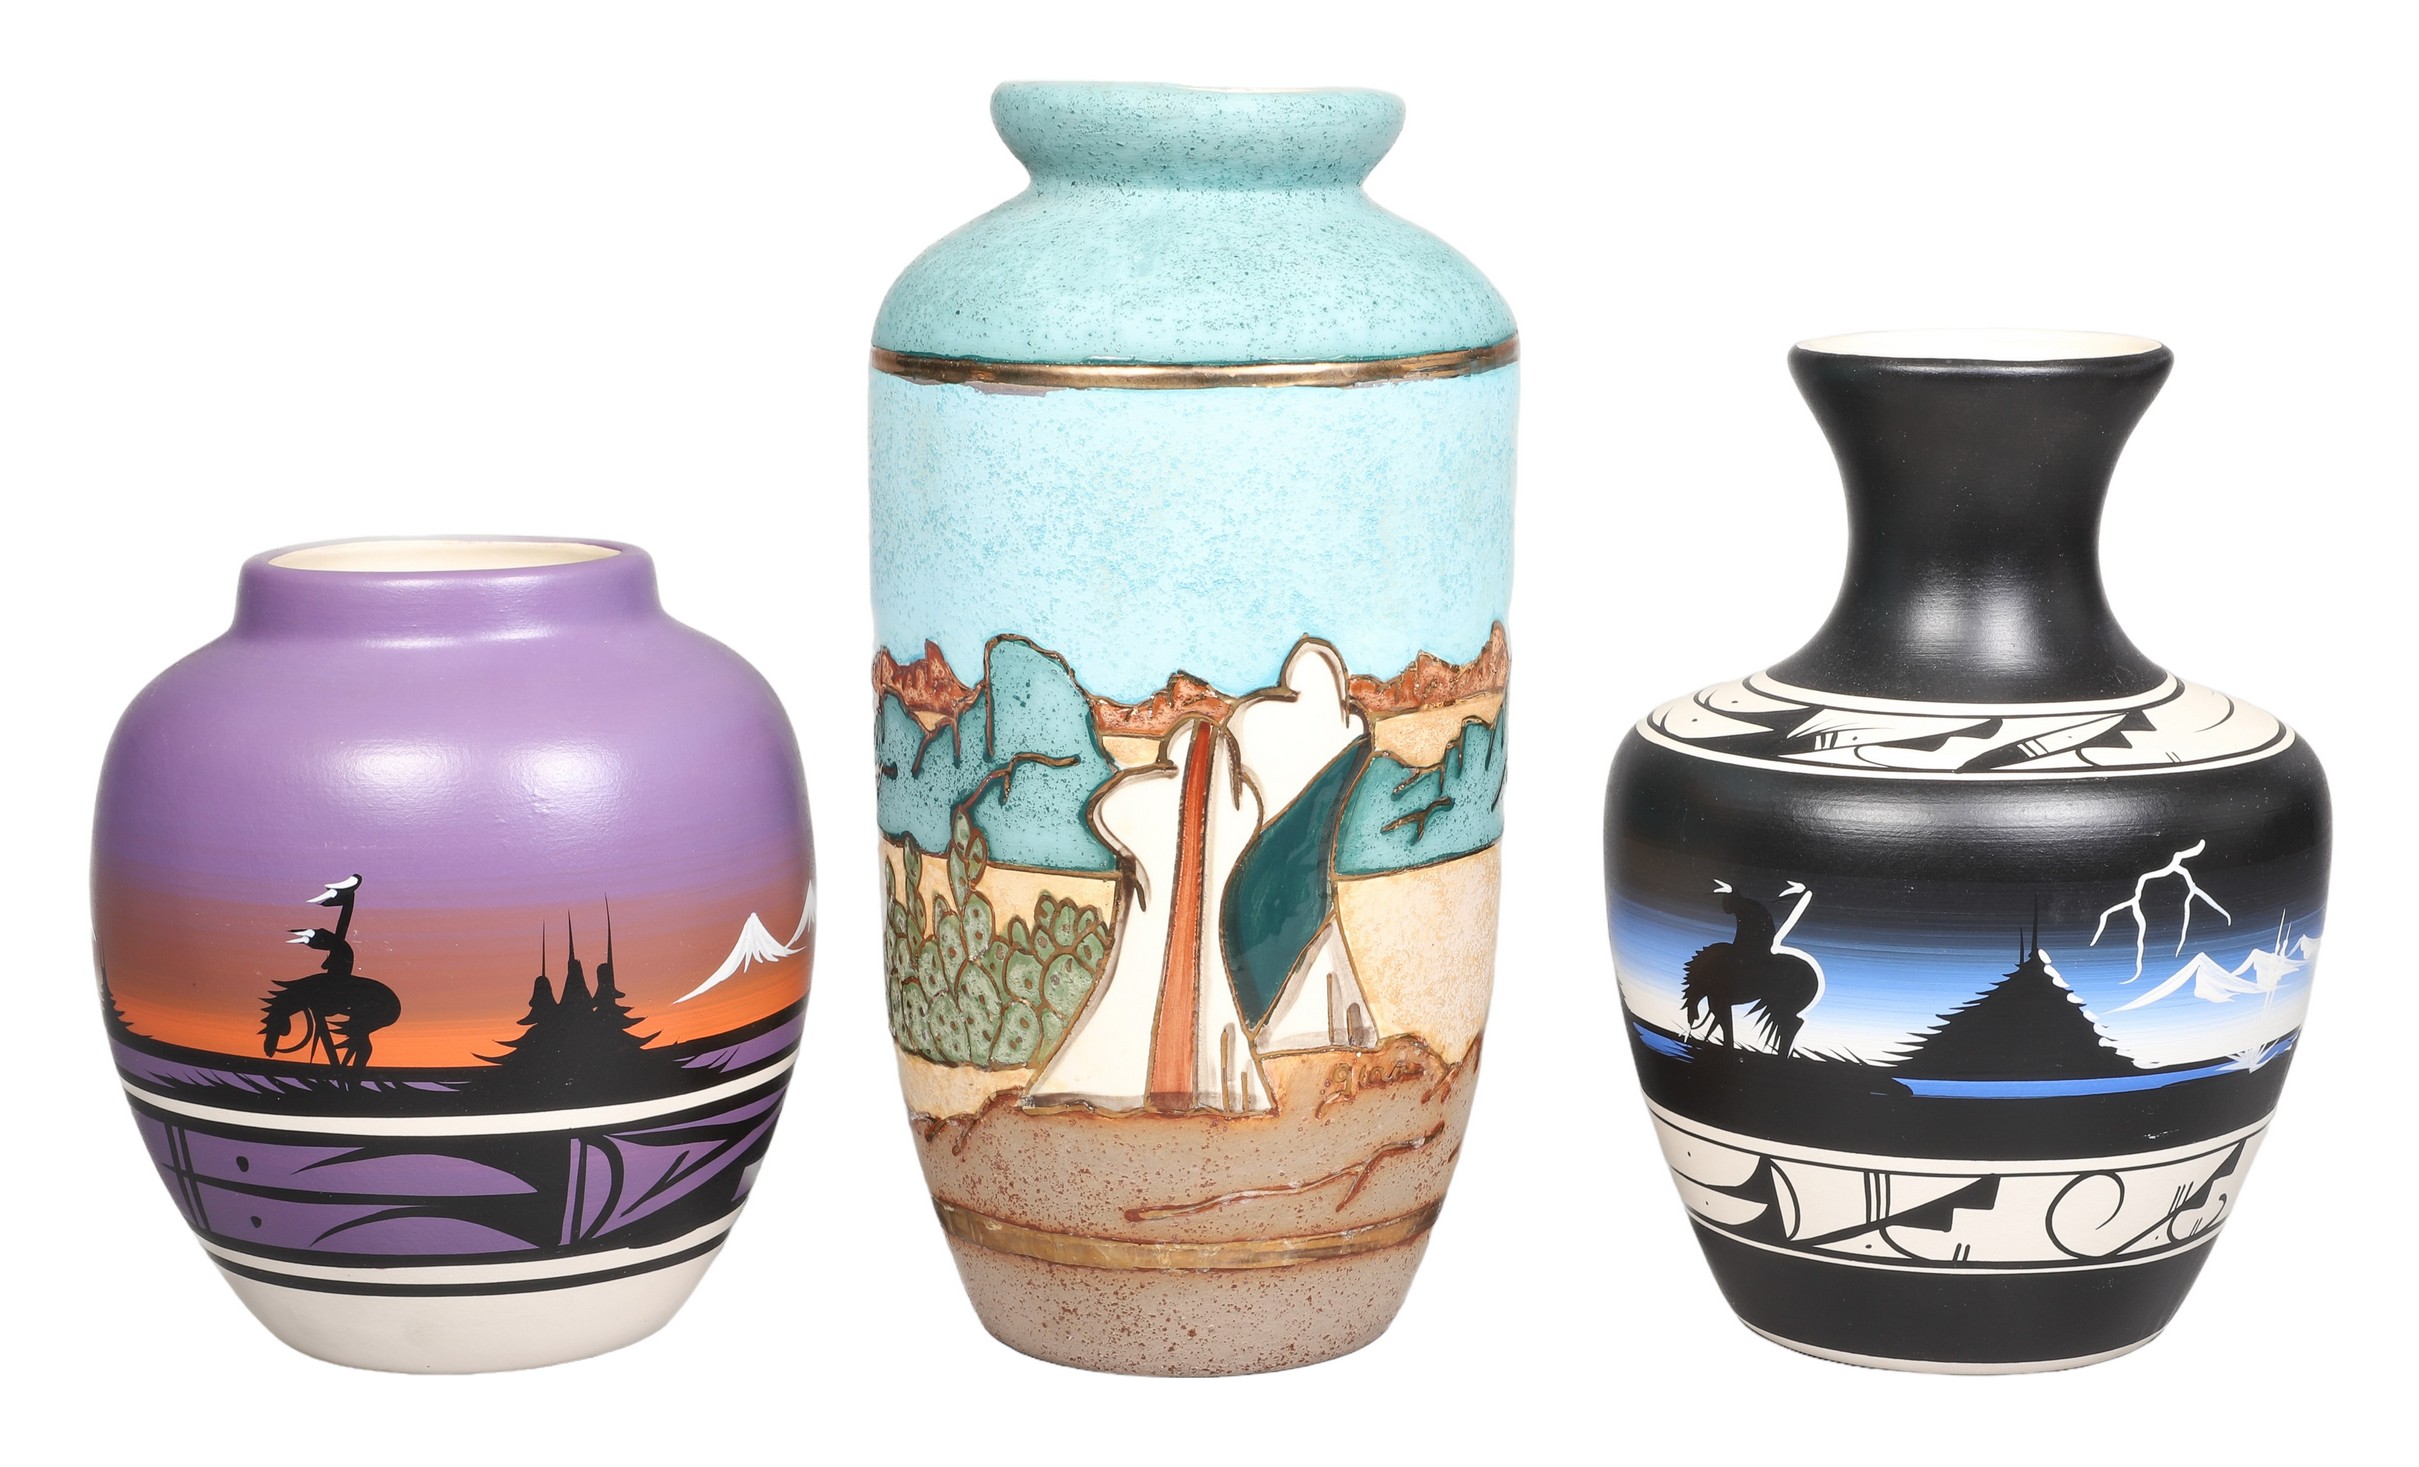 Three hand painted ceramic vases